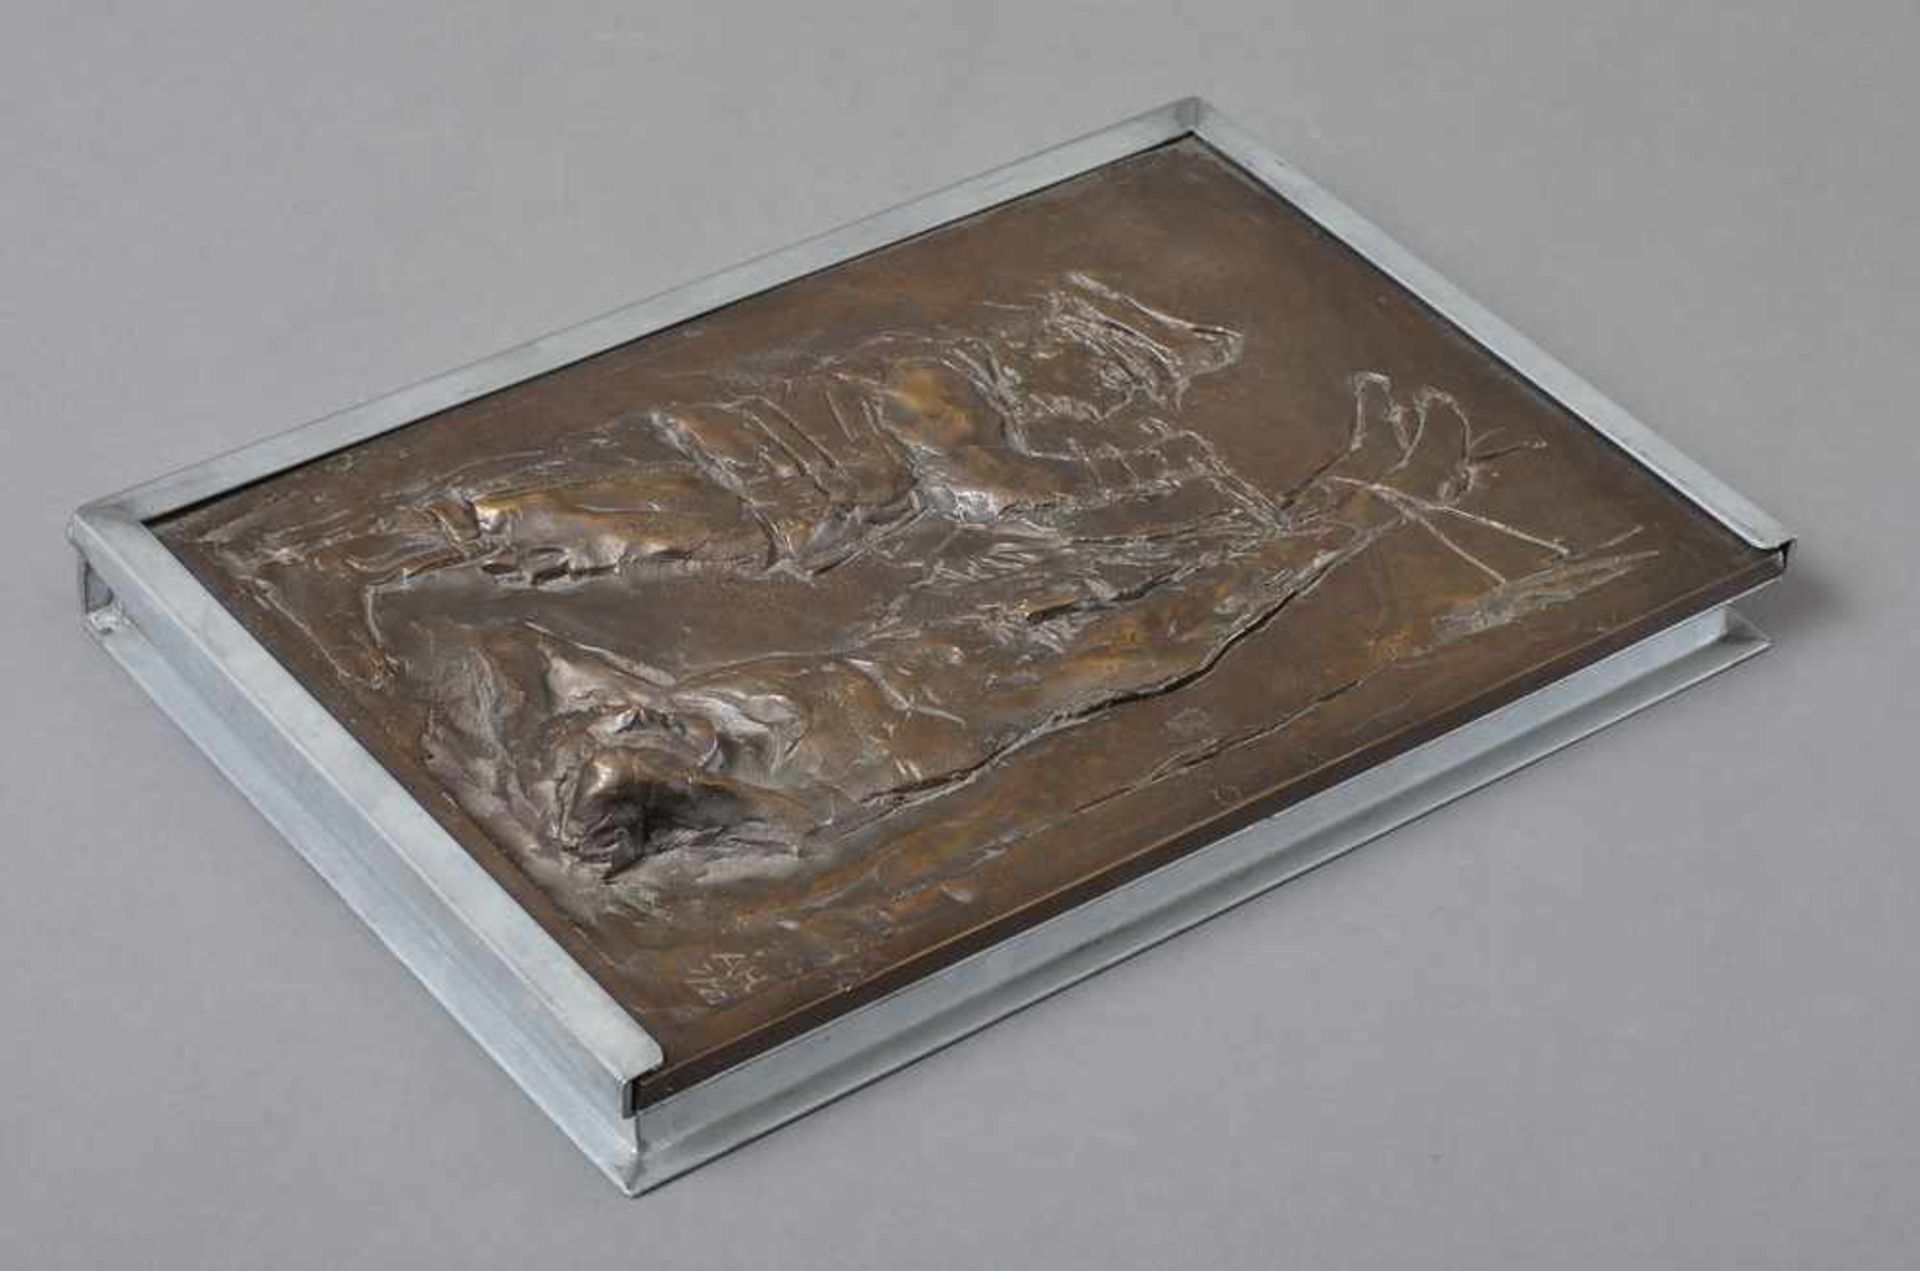 Hrdlicka, Alfred (1928-2009) "Anatomie des Leids", Buch in Schatulle mit Bronze Relief, 7/20, 36, - Bild 5 aus 5